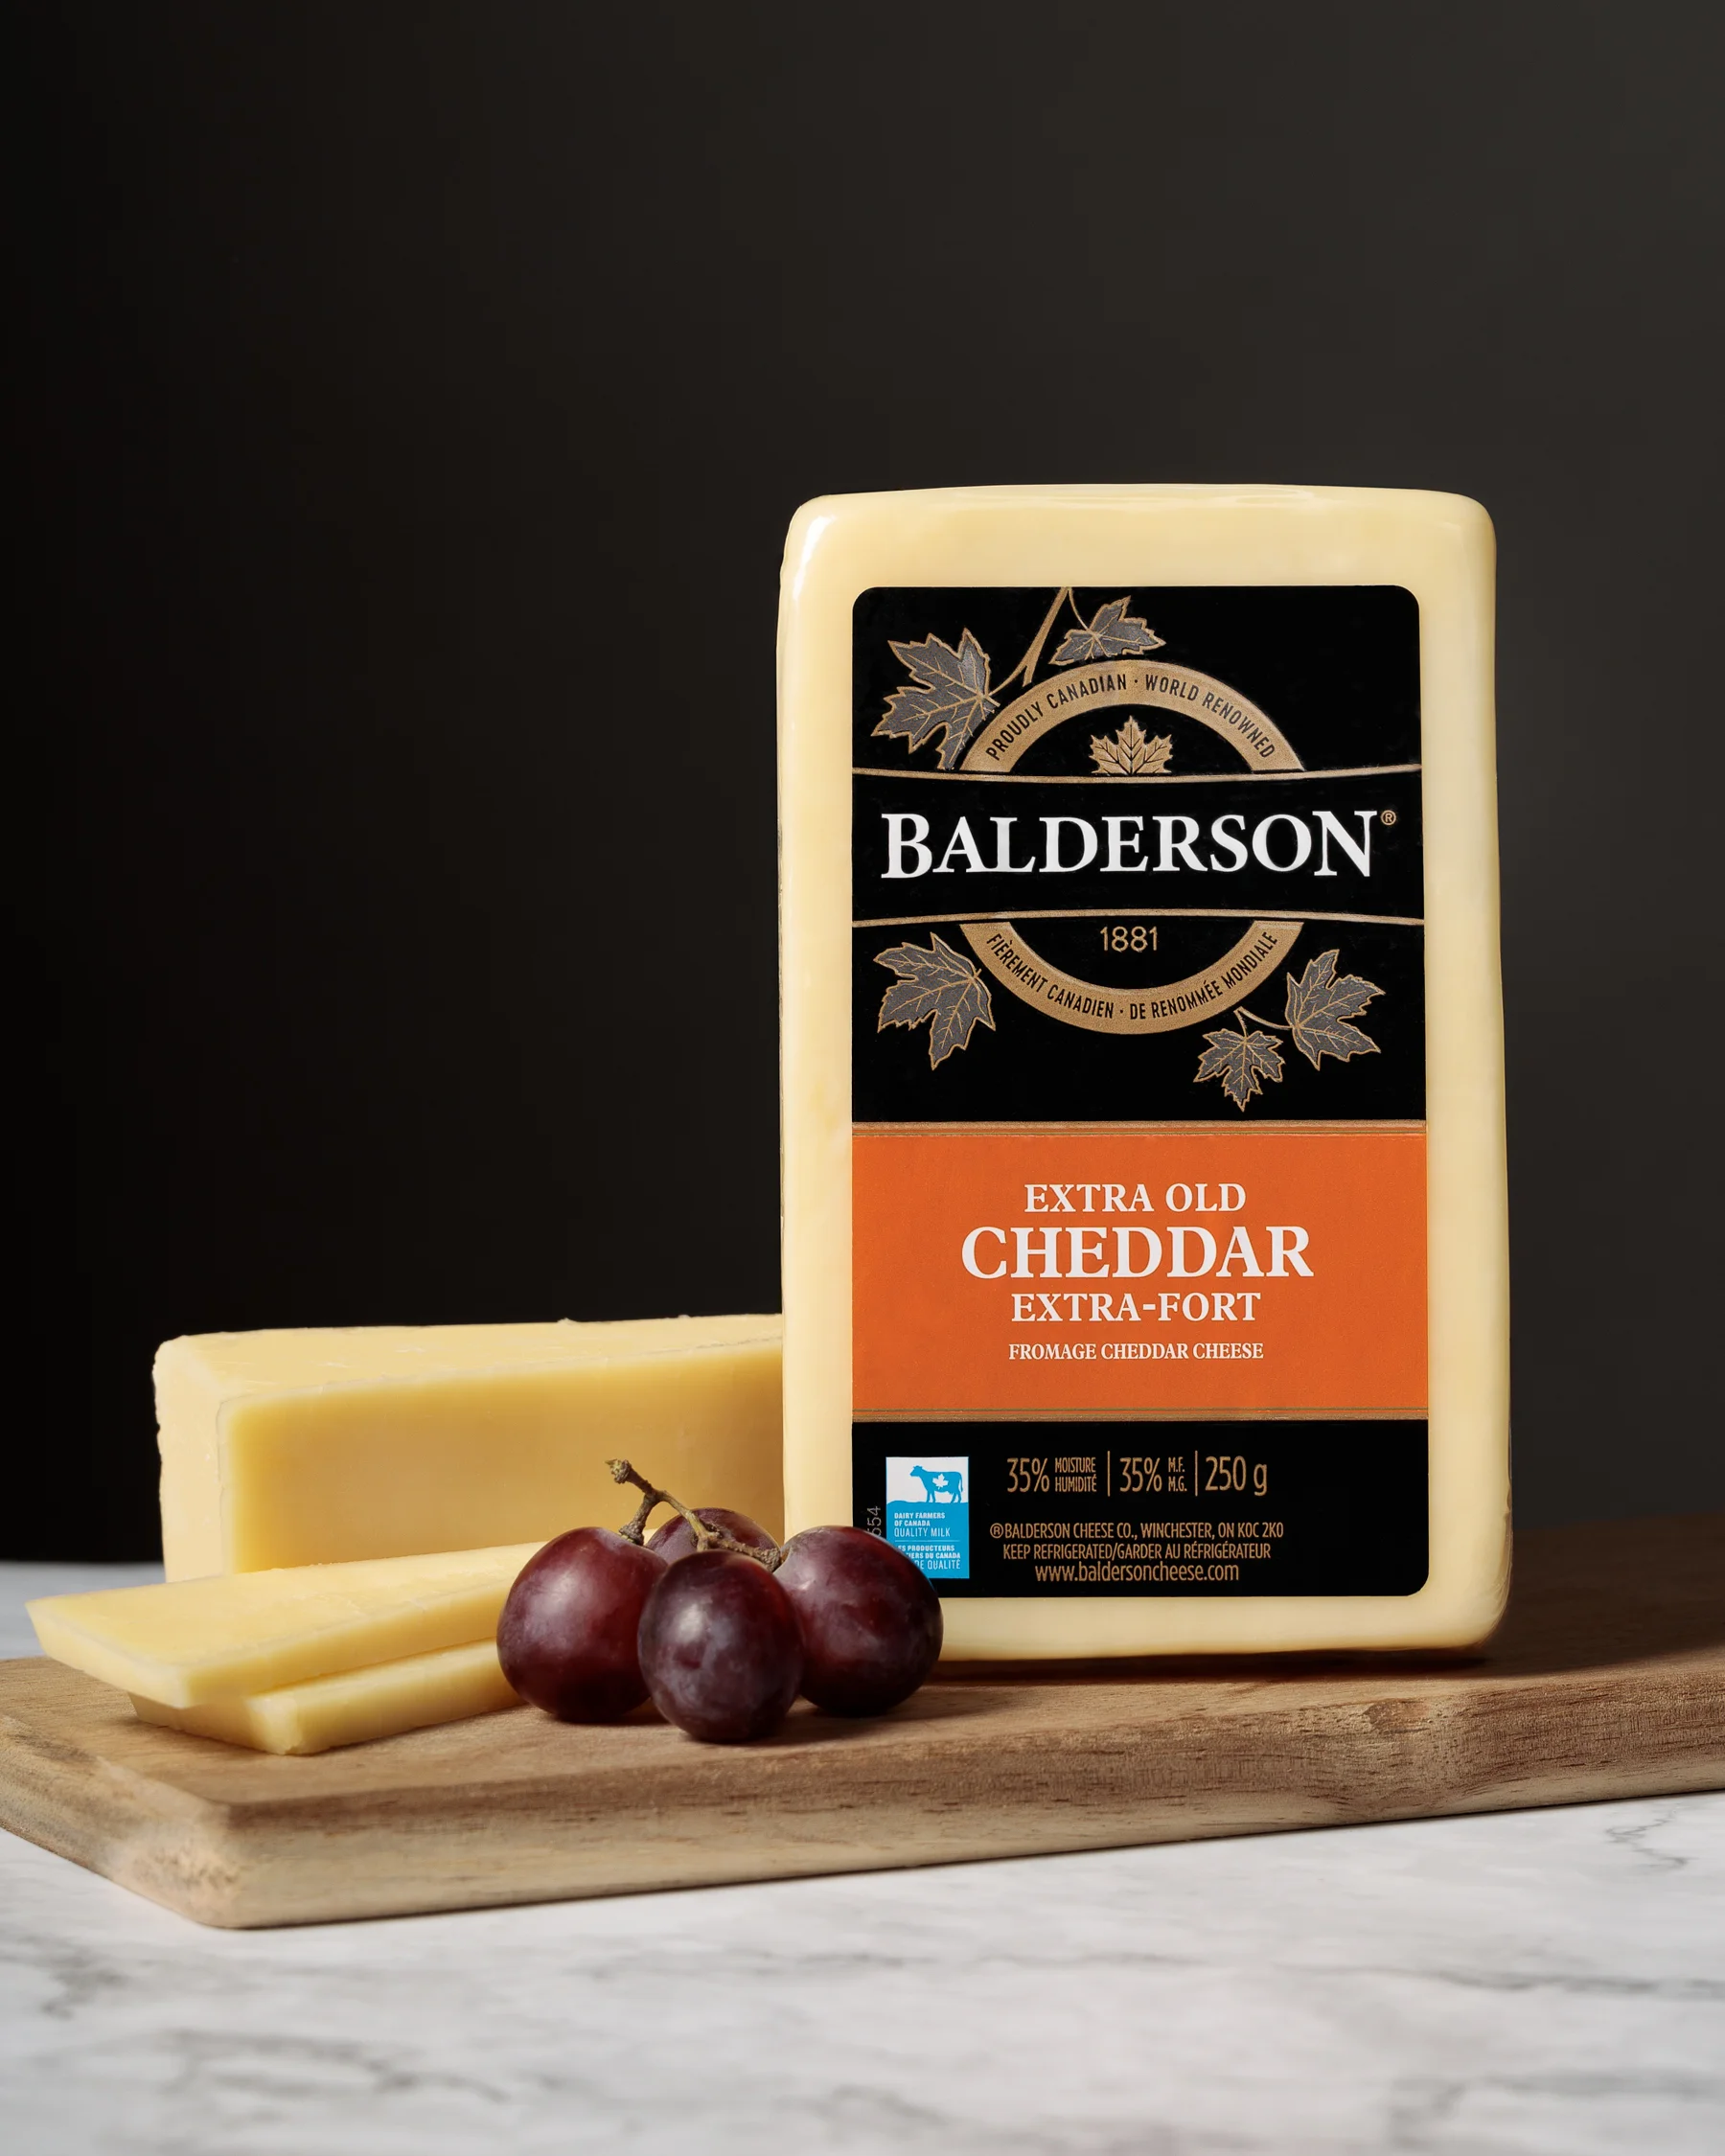 contentcontent:Design Food Photography Toronto Ontario Canada Balderson Cheese APT Agency